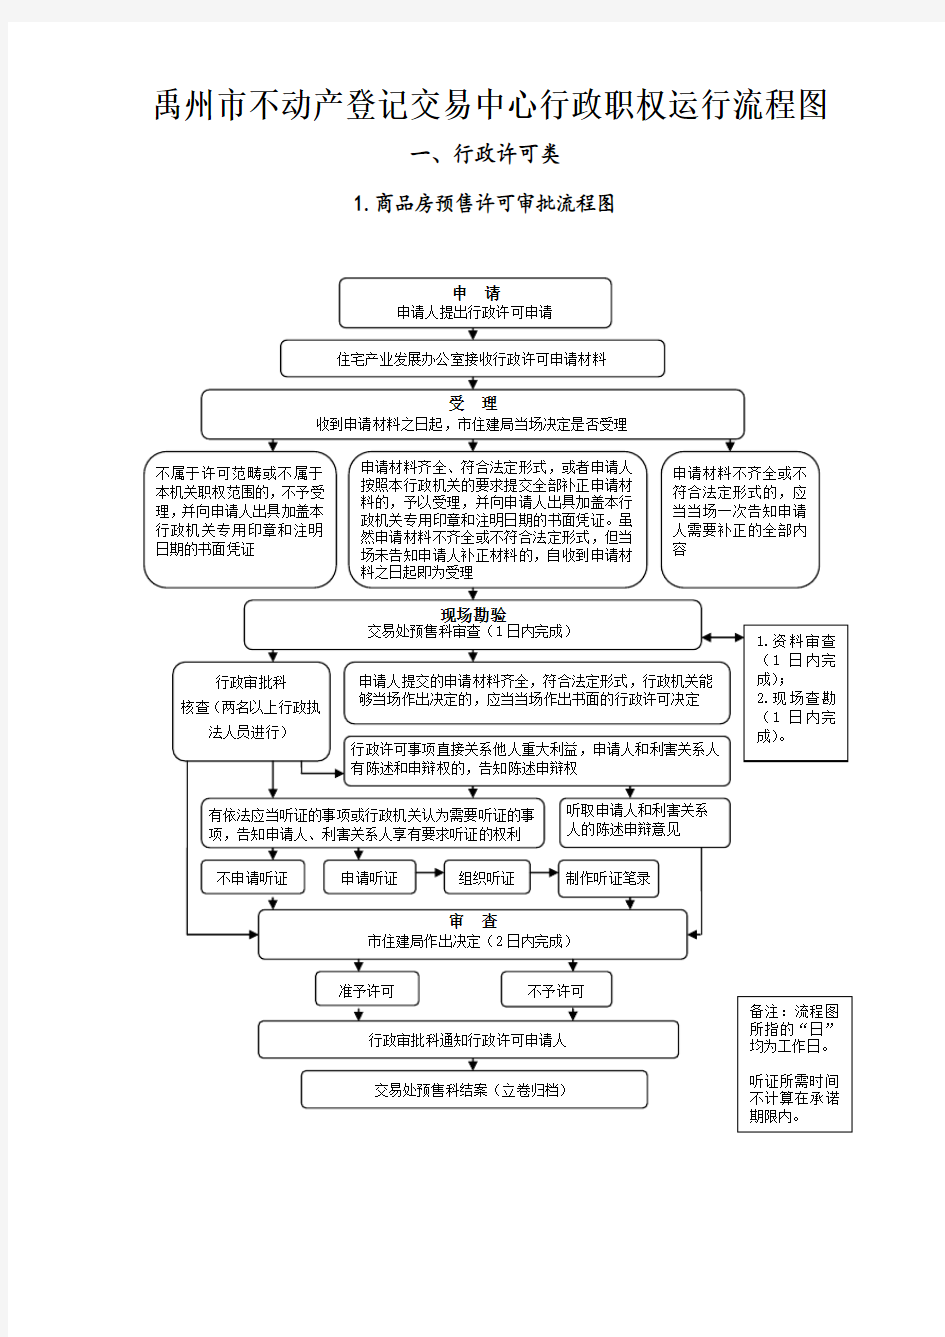 禹州不动产登记交易中心行政职权运行流程图